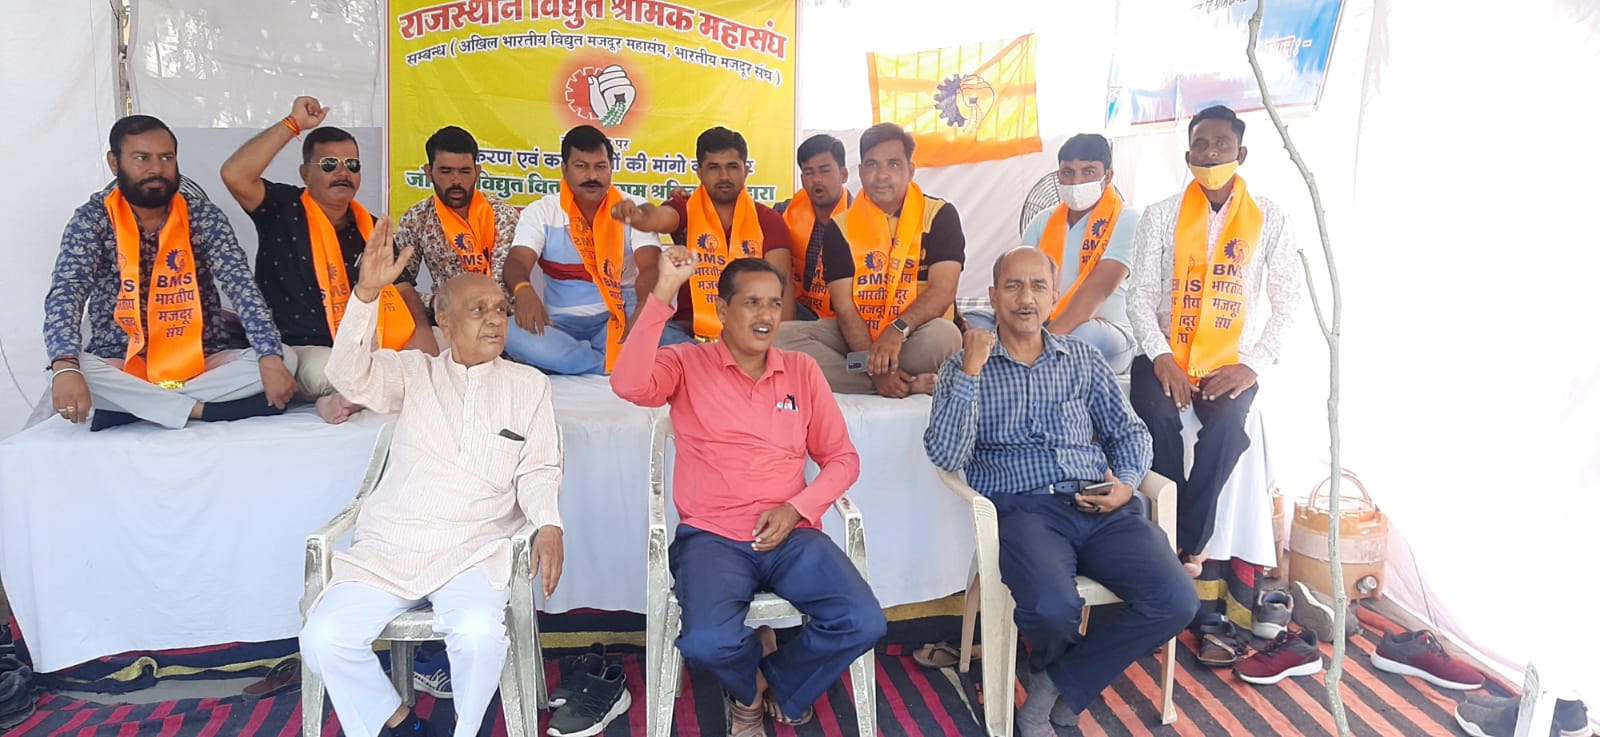 राजस्थान विधुत श्रमिक महासंघ संघ का धरना जयपुर में सातवें दिन भी जारी